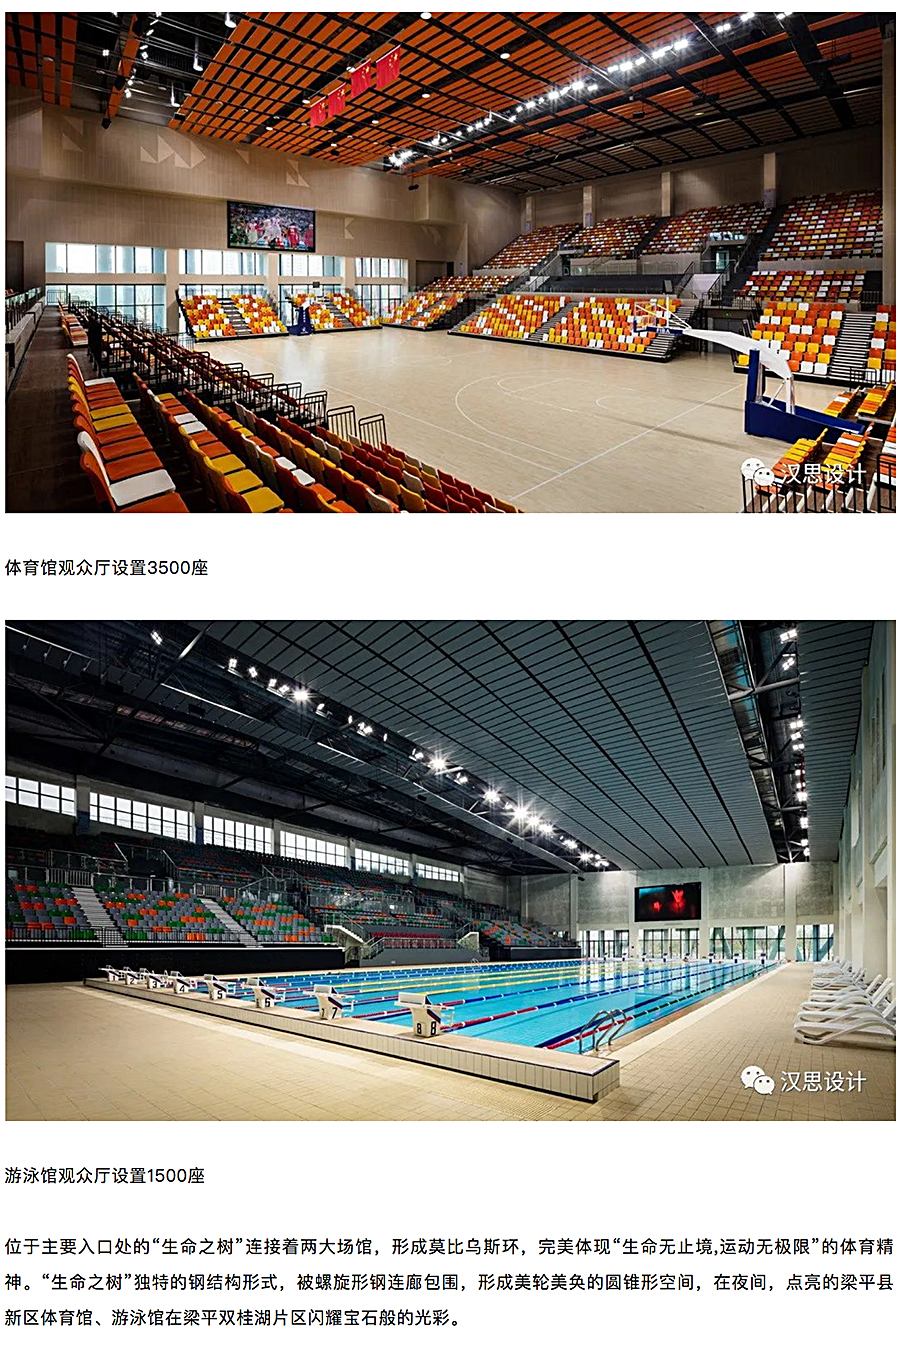 重庆梁平市新区体育馆和游泳馆_0003_图层-4.jpg